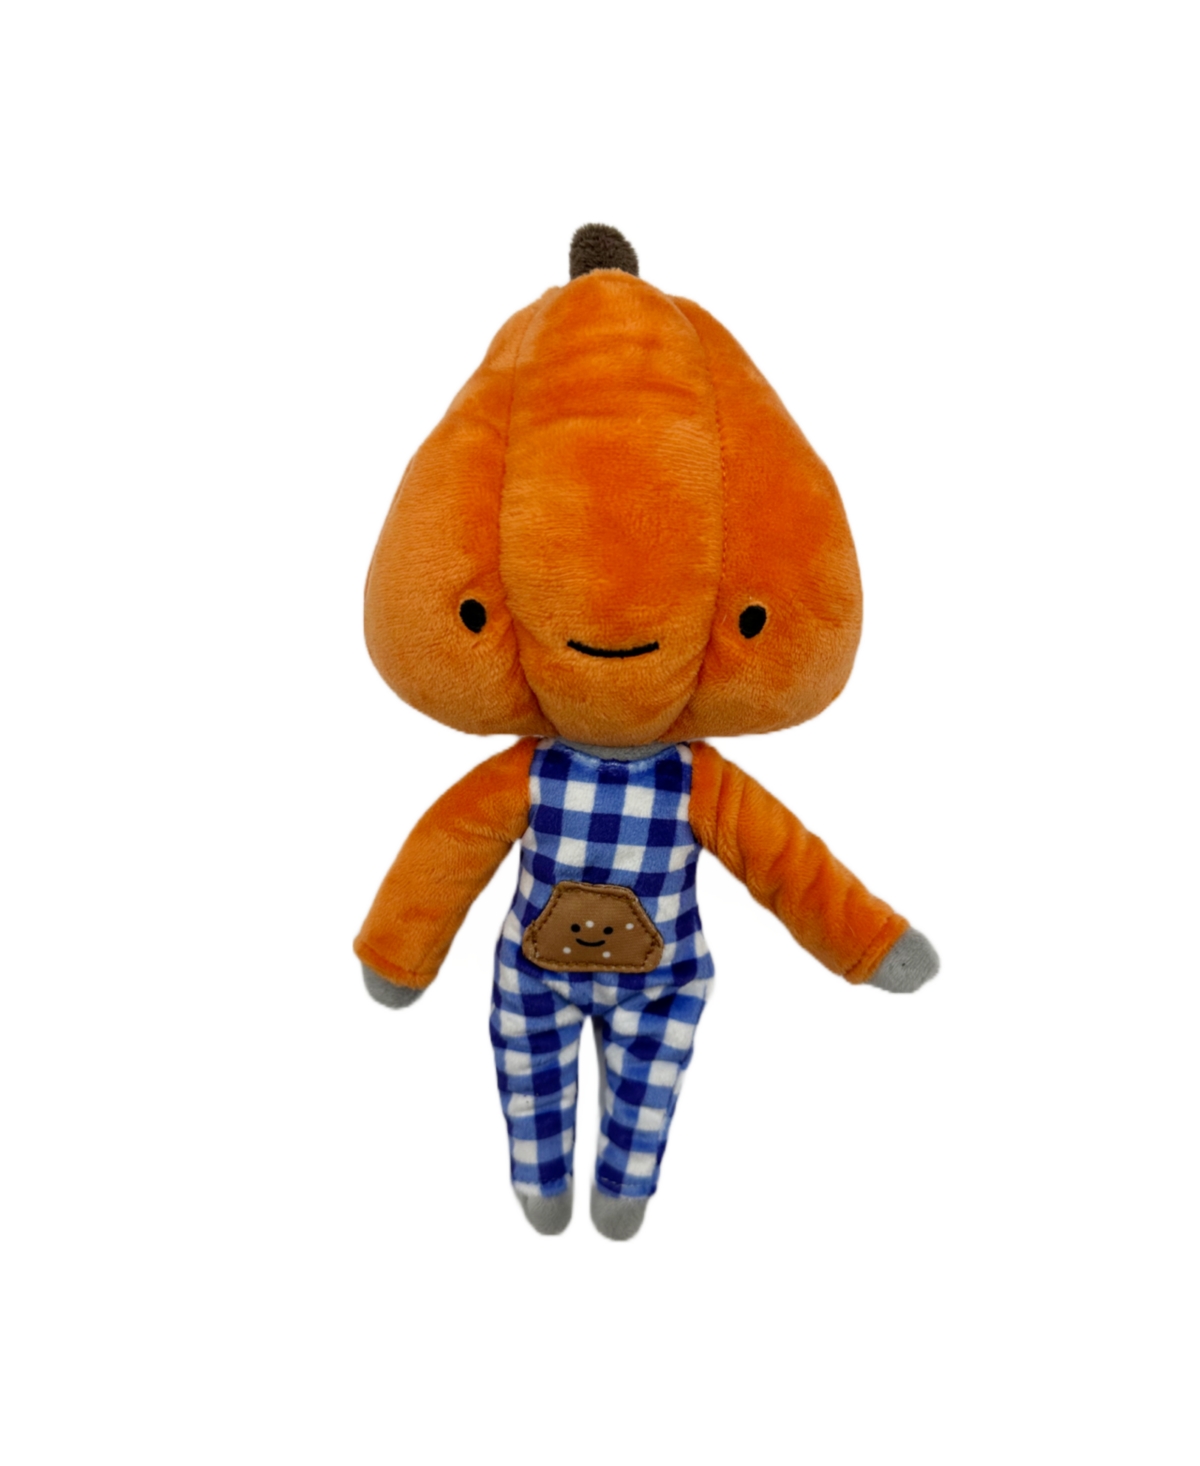 Pumpkin Nose Work Dog Toy - Orange